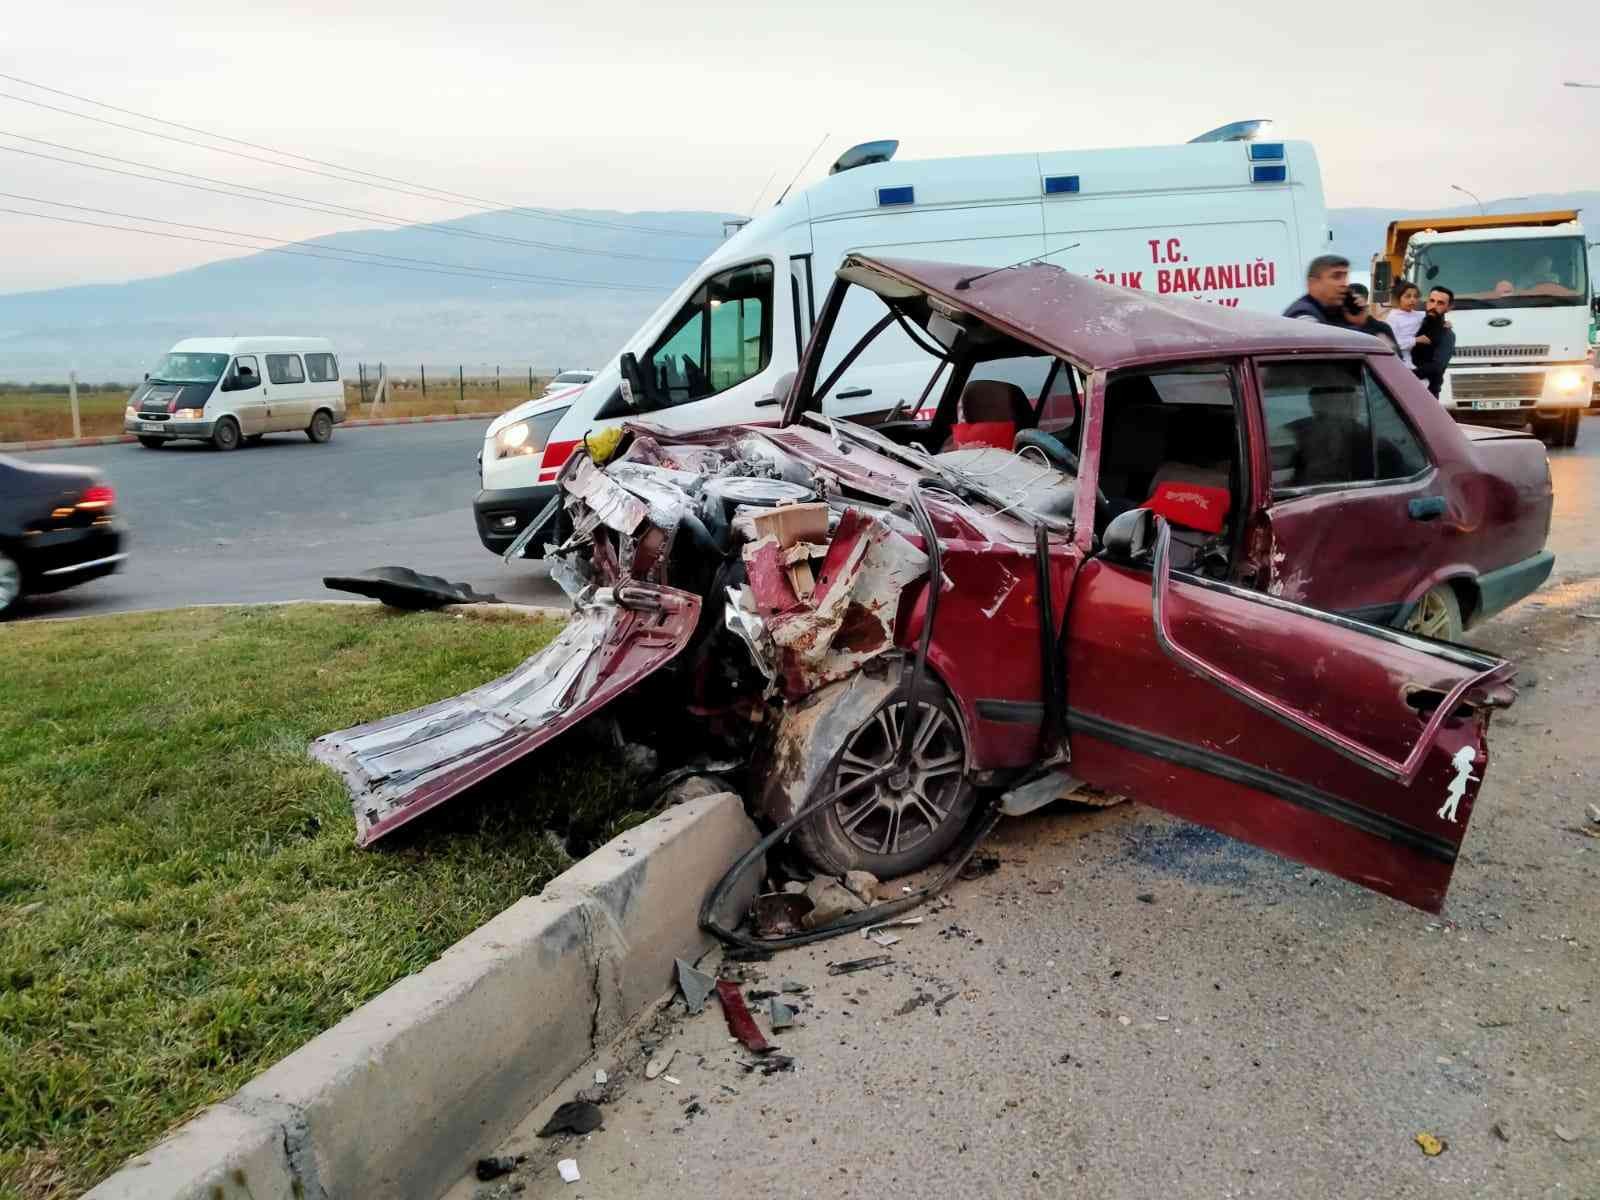 Kahramanmaraş’ta trafik kazası: 8 yaralı #kahramanmaras